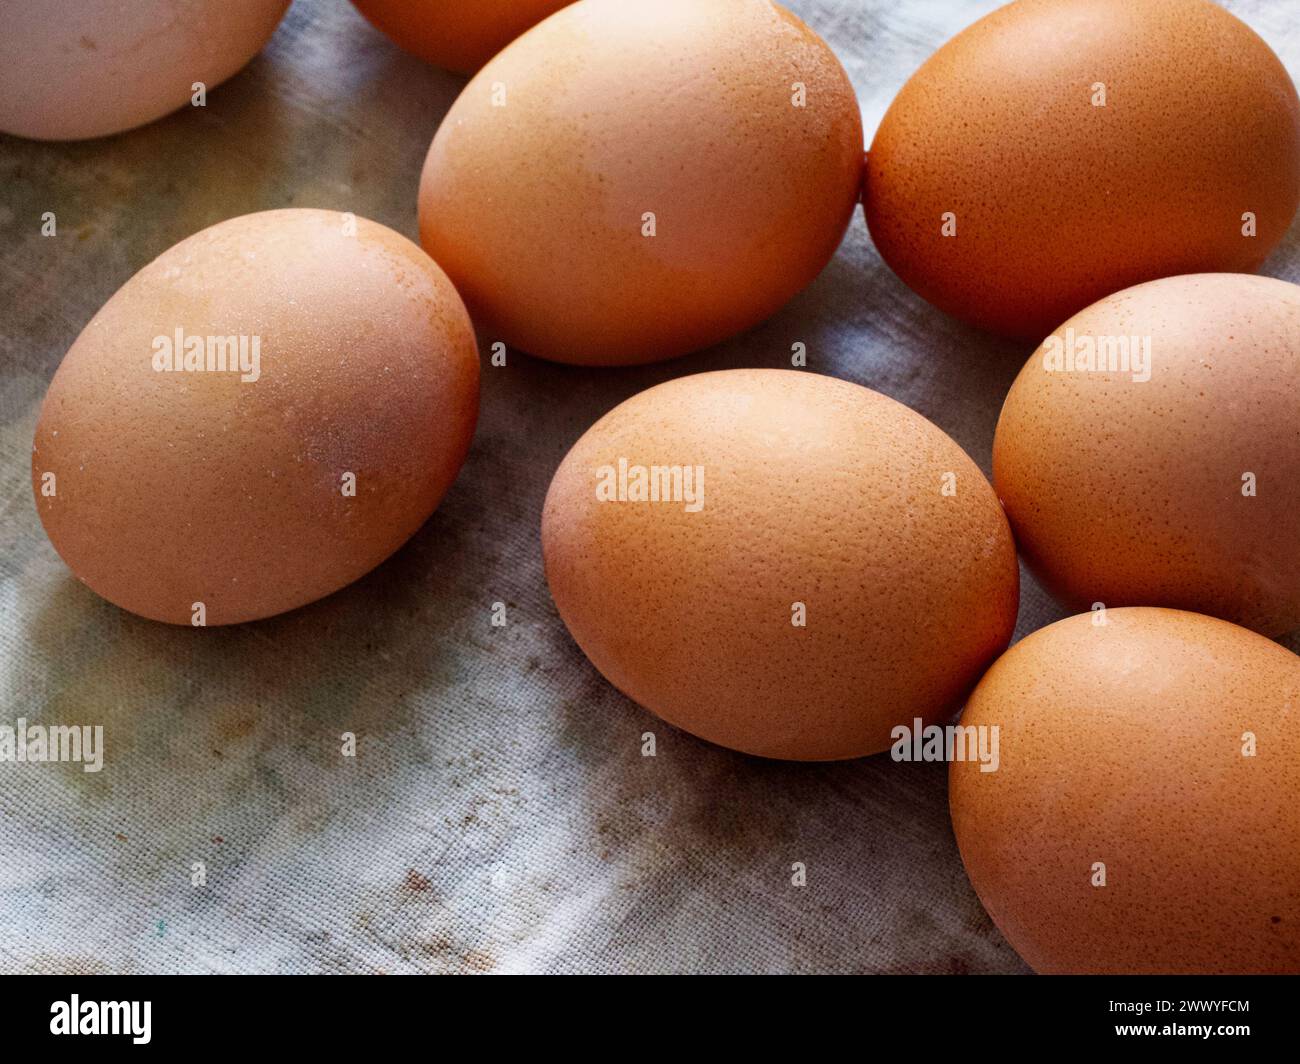 Das Bild zeigt acht braune Eier, die auf einer strukturierten Stoffoberfläche verstreut sind, wodurch eine natürliche und einfache Ästhetik entsteht. Stockfoto